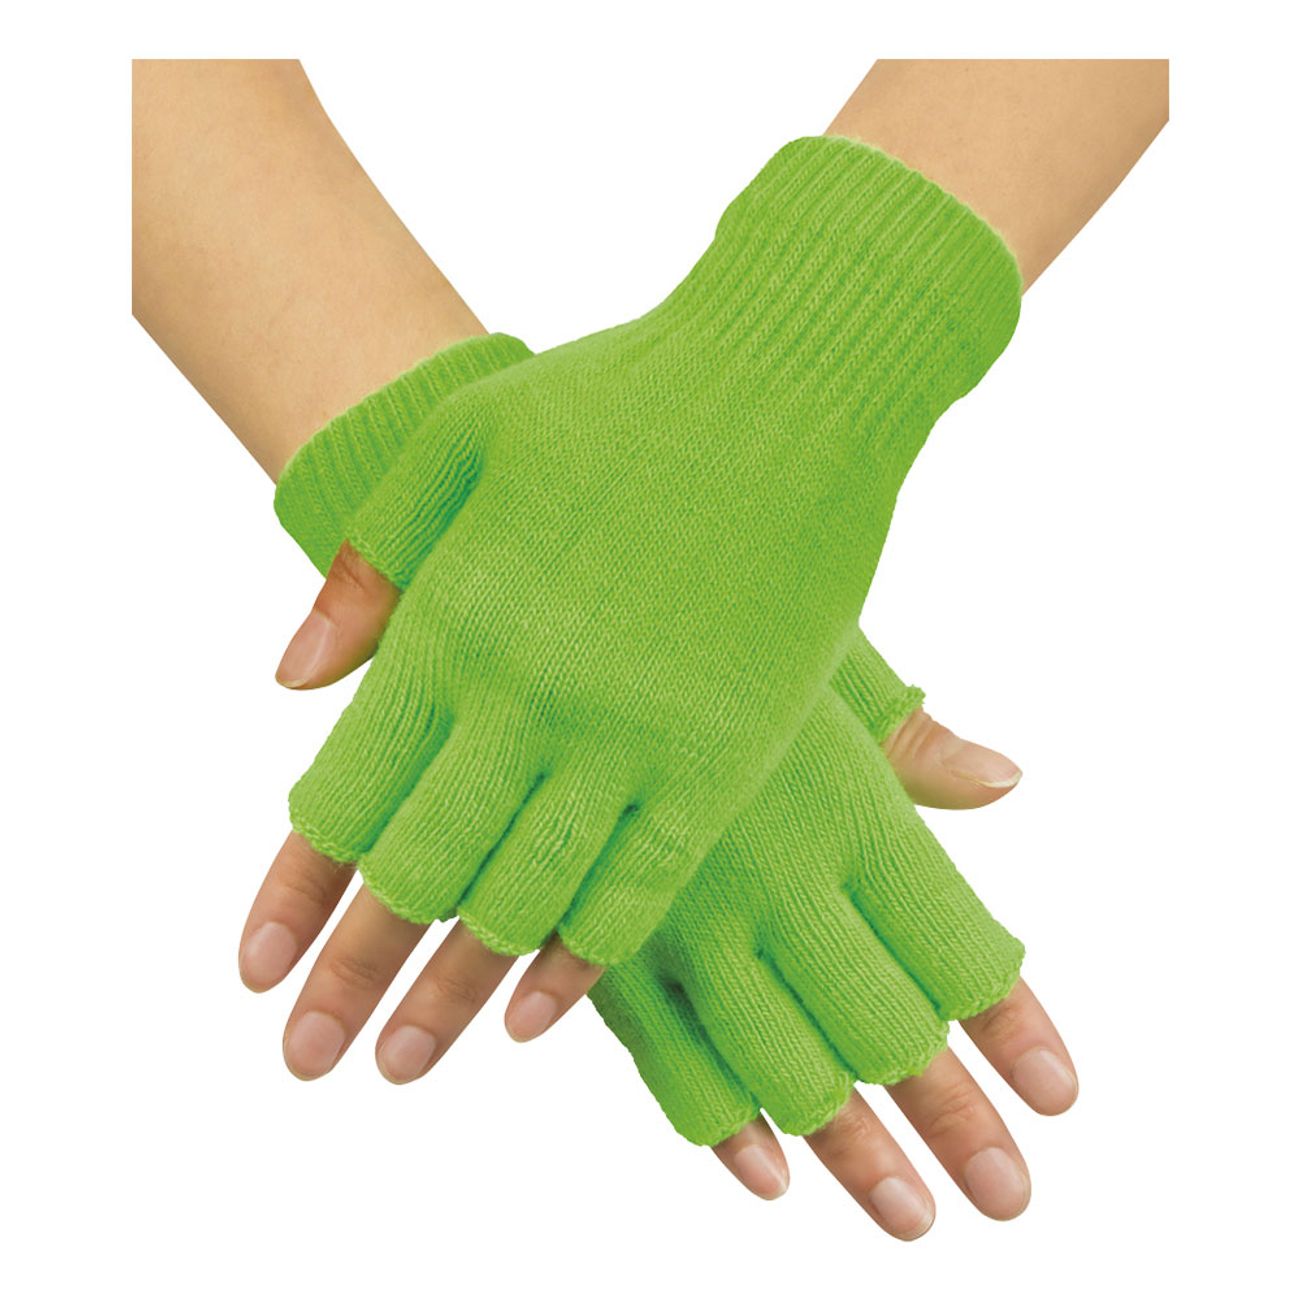 Jeg har en engelskundervisning Af Gud Uplifted Handsker Fingerløse Neongrønne | Partykungen